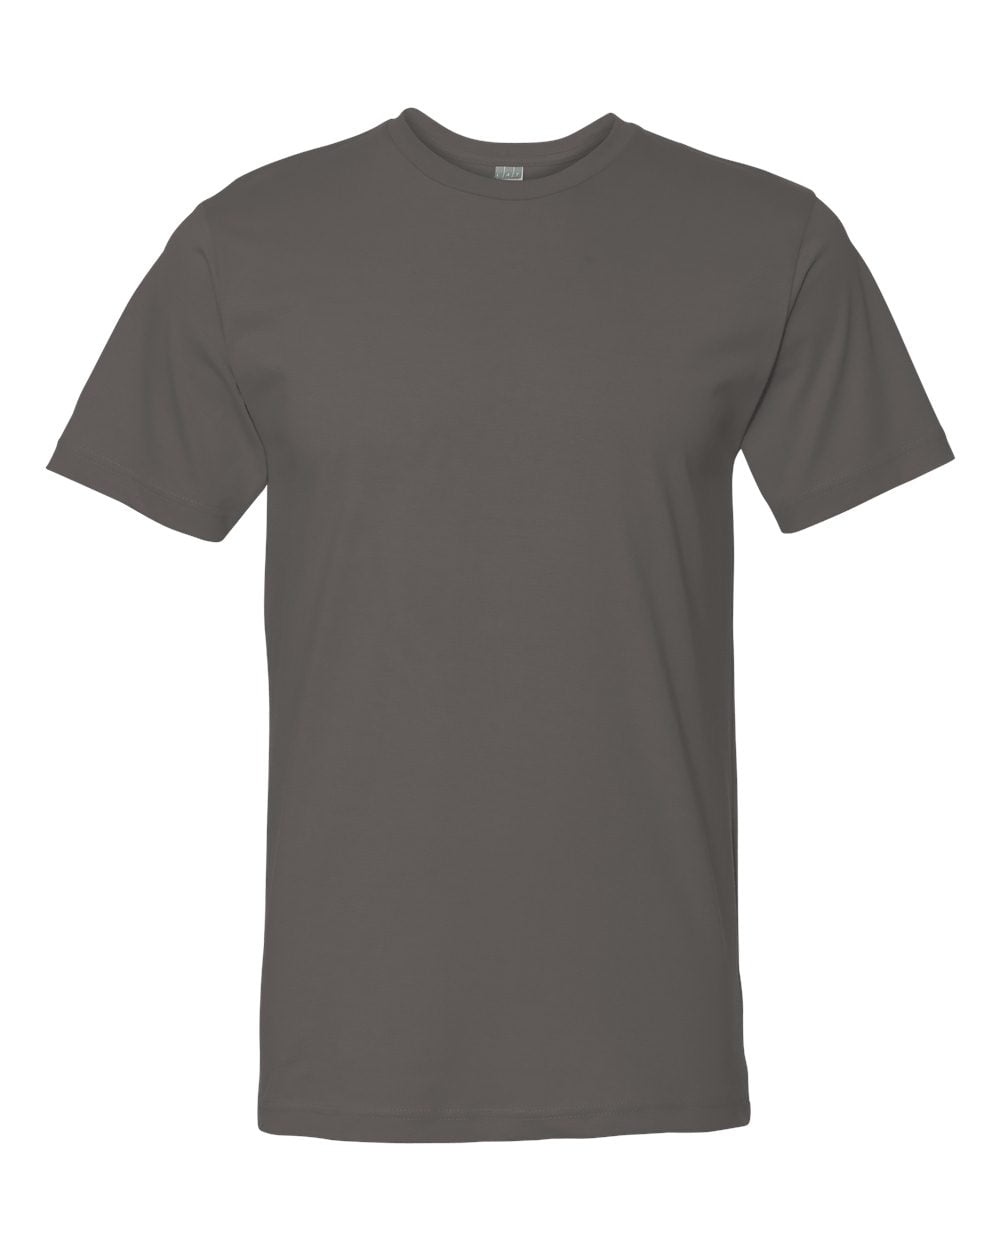 LAT 6901 Men's Fine Jersey T-Shirt - Walmart.com